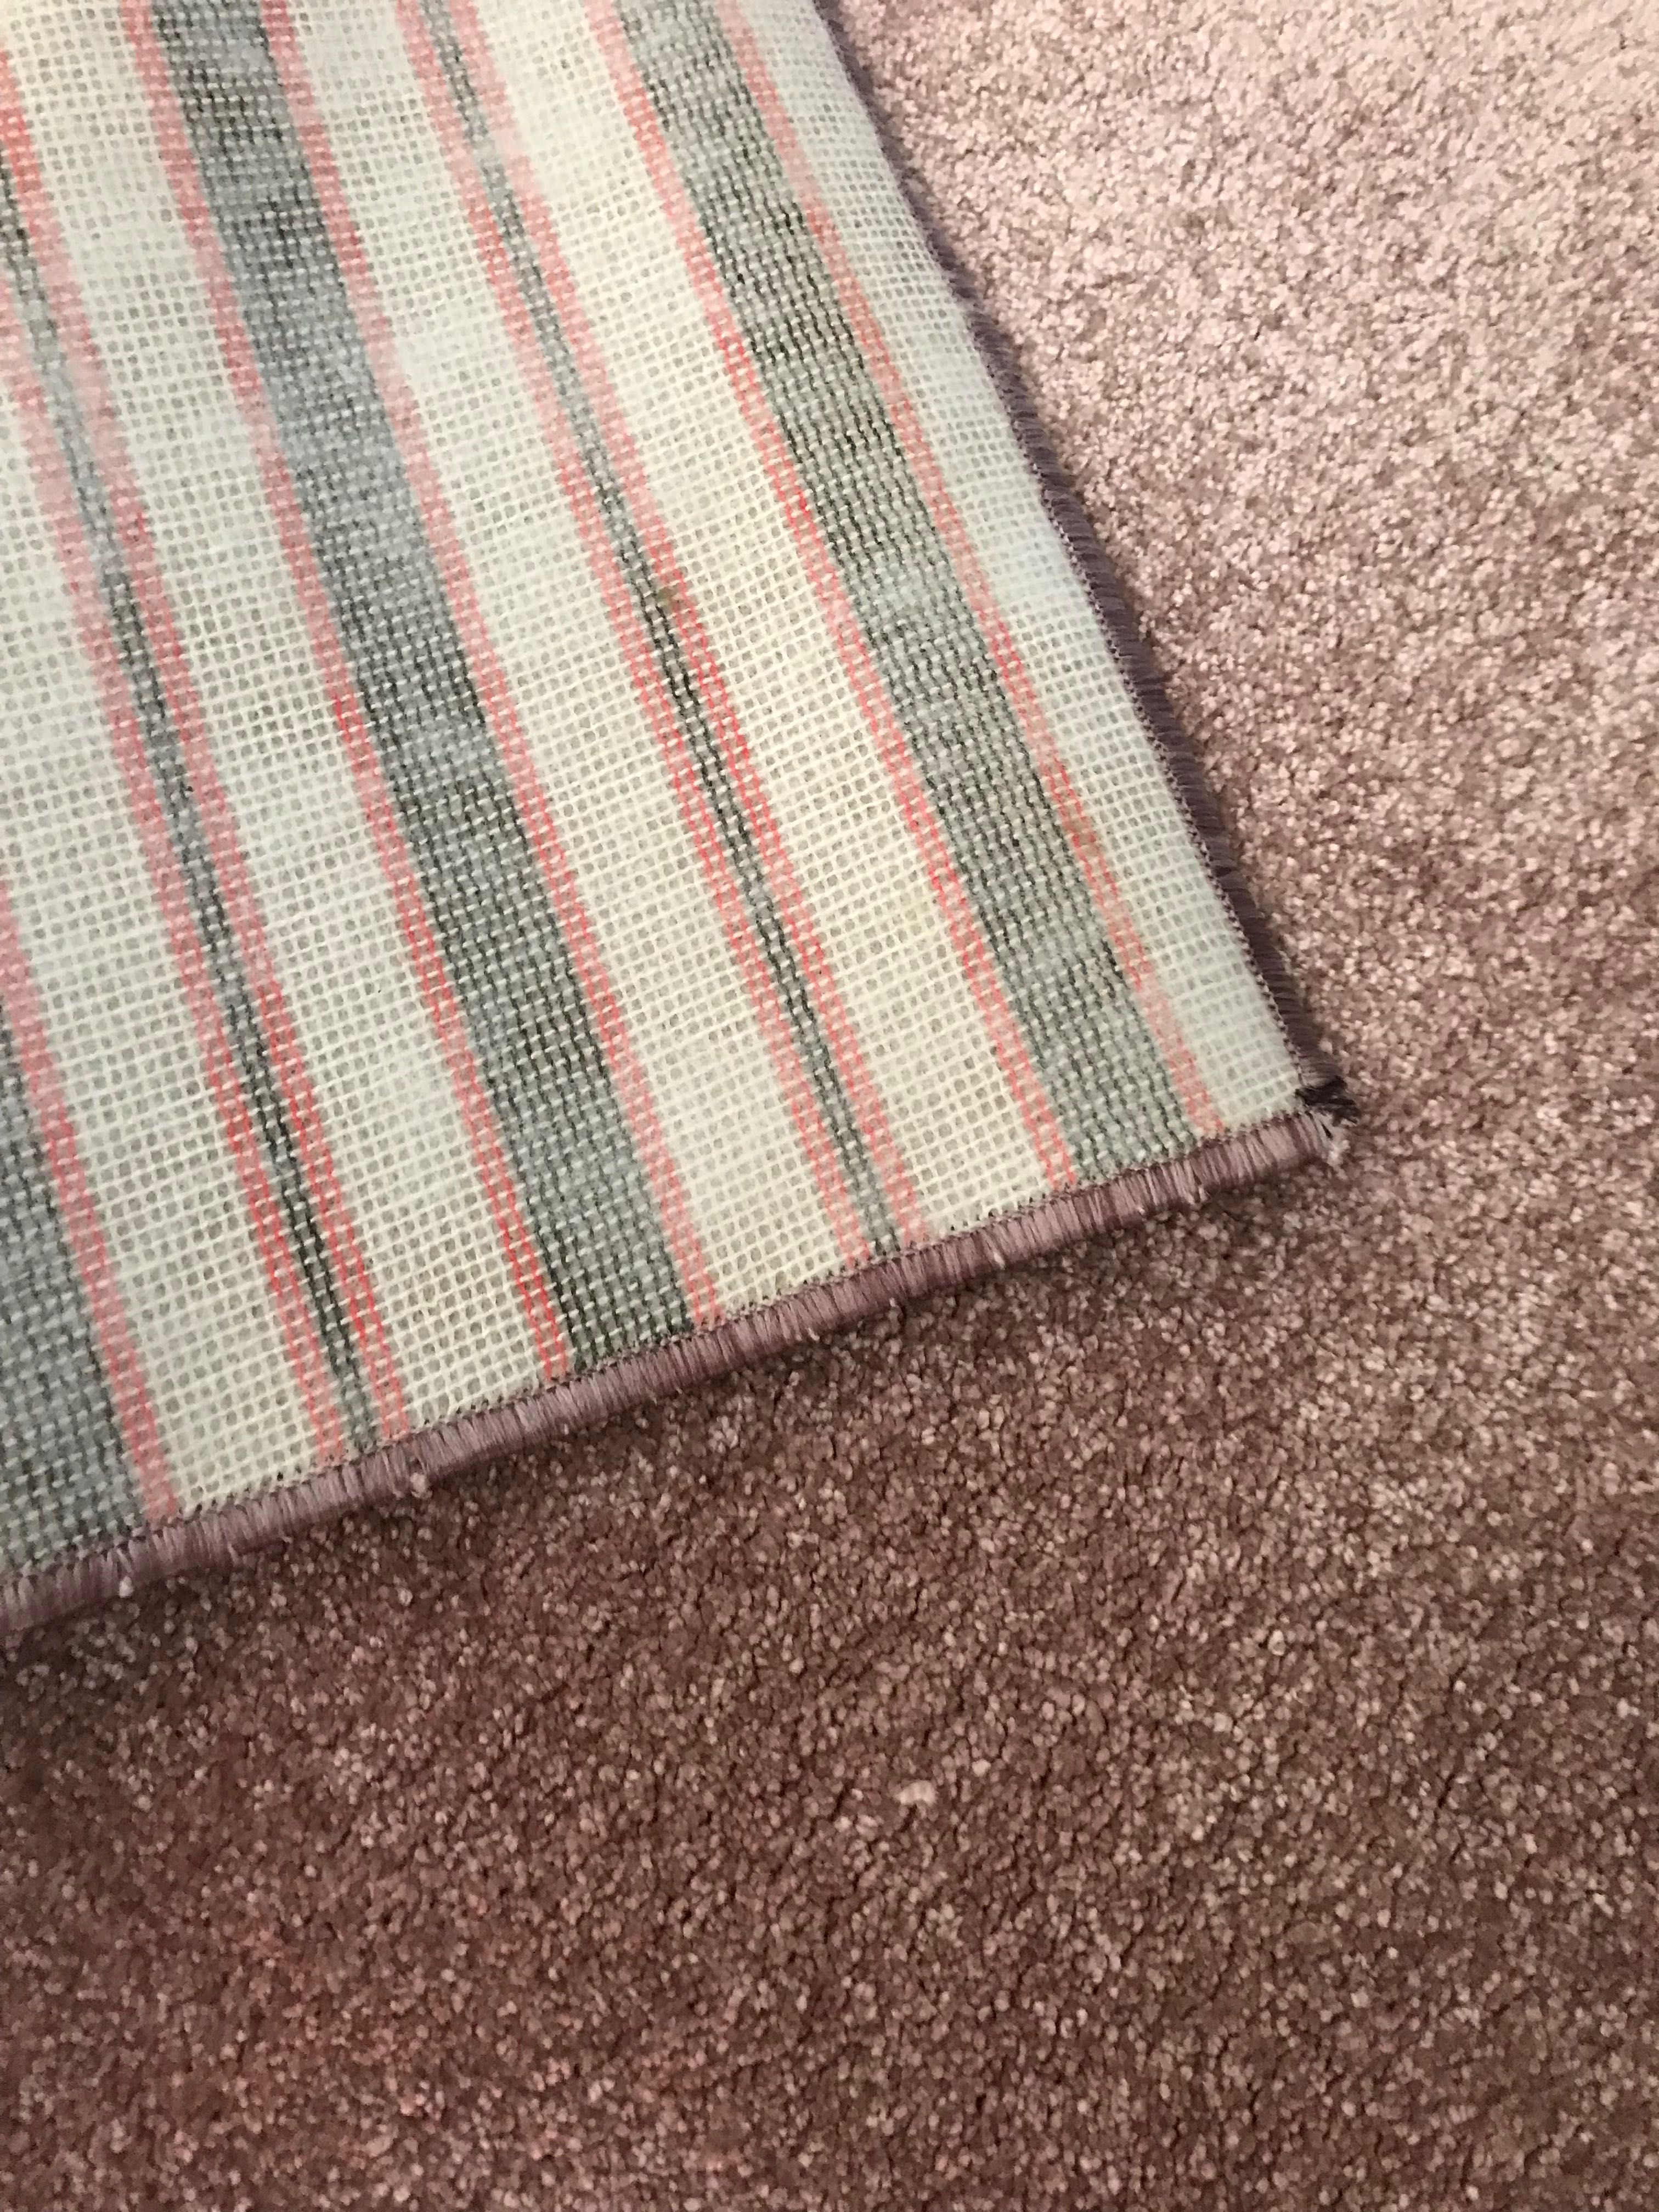 Nowy chodnik dywanowy